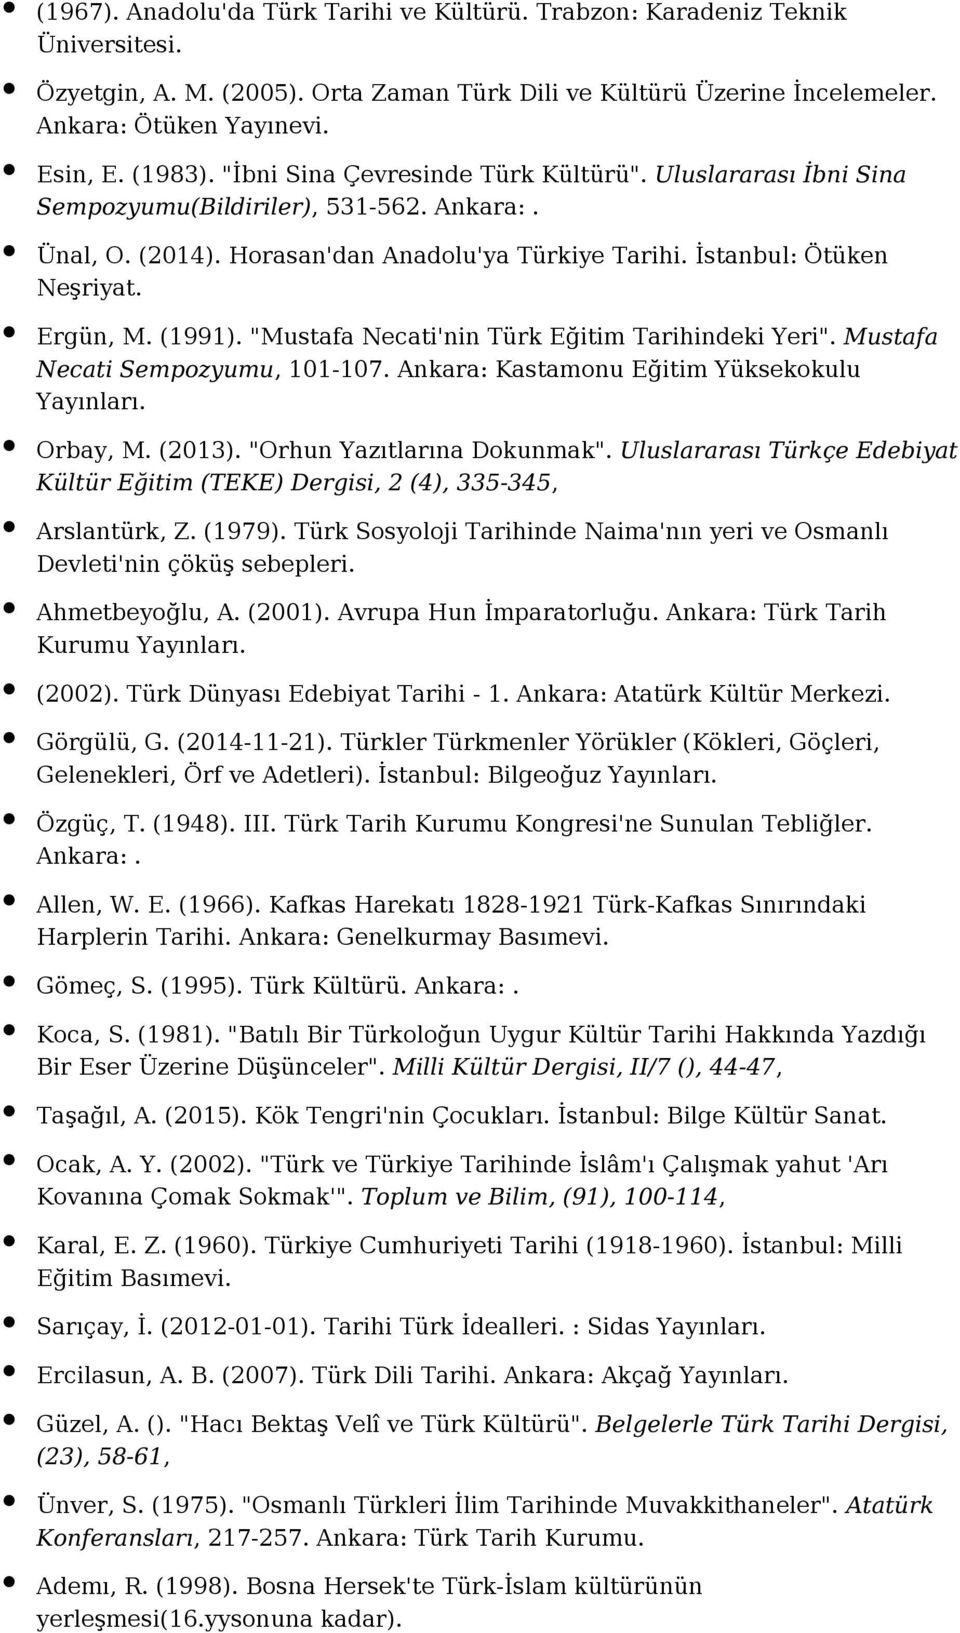 Ergün, M. (1991). "Mustafa Necati'nin Türk Eğitim Tarihindeki Yeri". Mustafa Necati Sempozyumu, 101-107. Ankara: Kastamonu Eğitim Yüksekokulu Orbay, M. (2013). "Orhun Yazıtlarına Dokunmak".